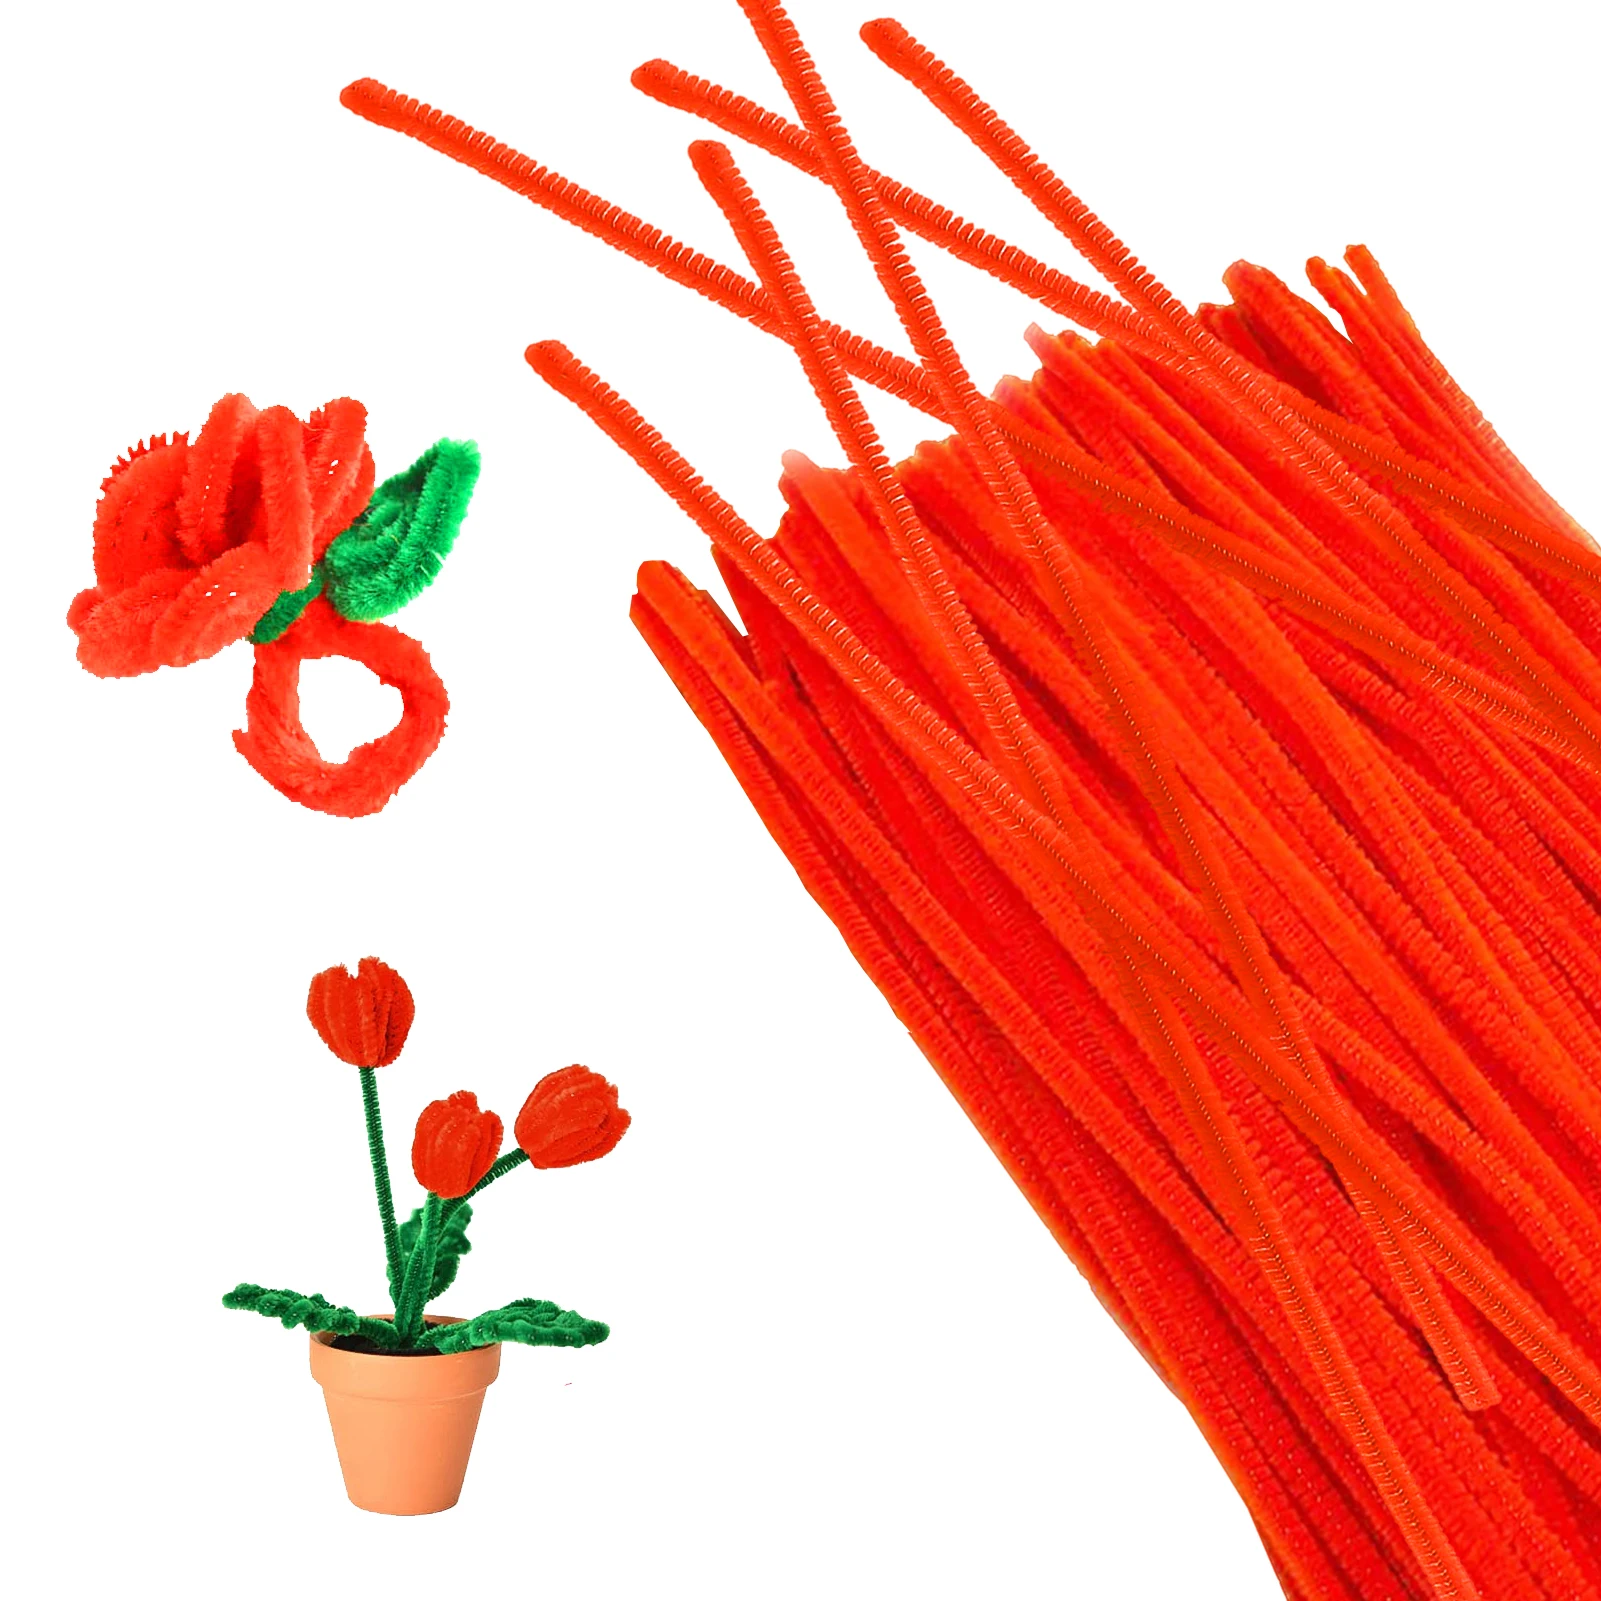 100db Zsenília szárművészet Rugalmas puha ajándékok Kézműves kellékek Csőtisztítók Fuzzy huzal Oktatási játékok Vaspálca Kézművesség Gyerekek Kép 5